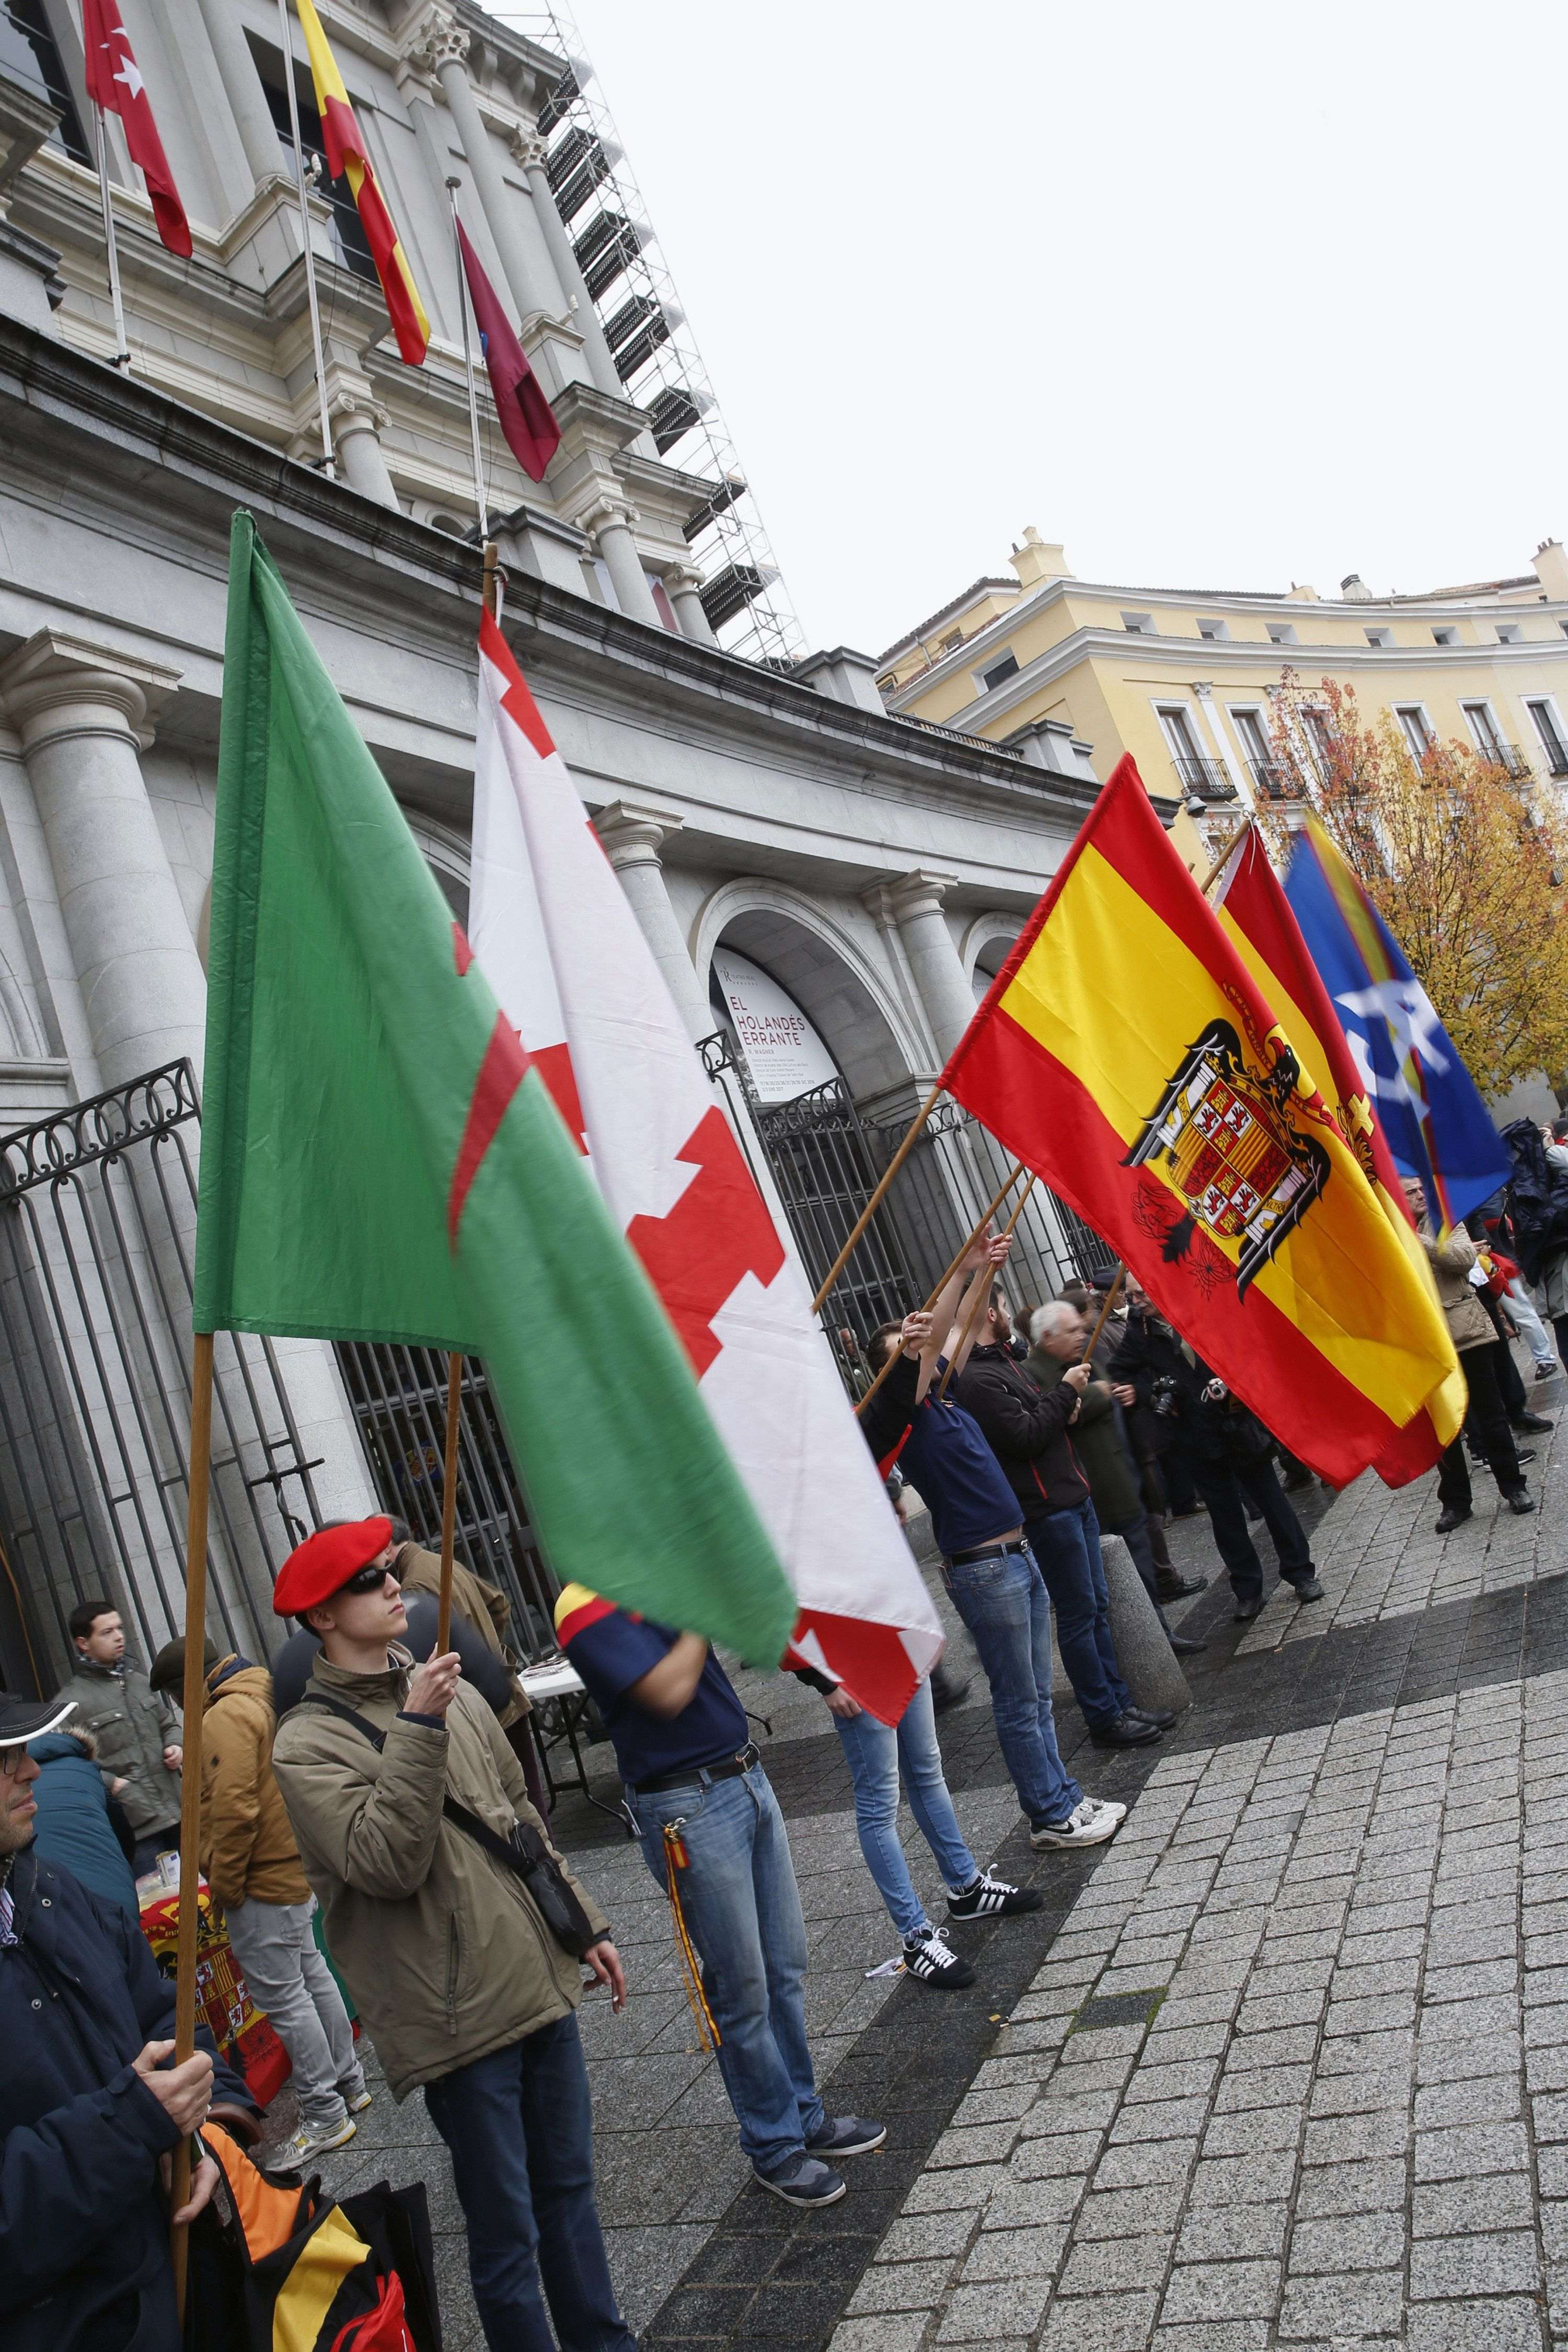 Unes 200 persones homenatgen Franco a Madrid en l'aniversari de la seva mort